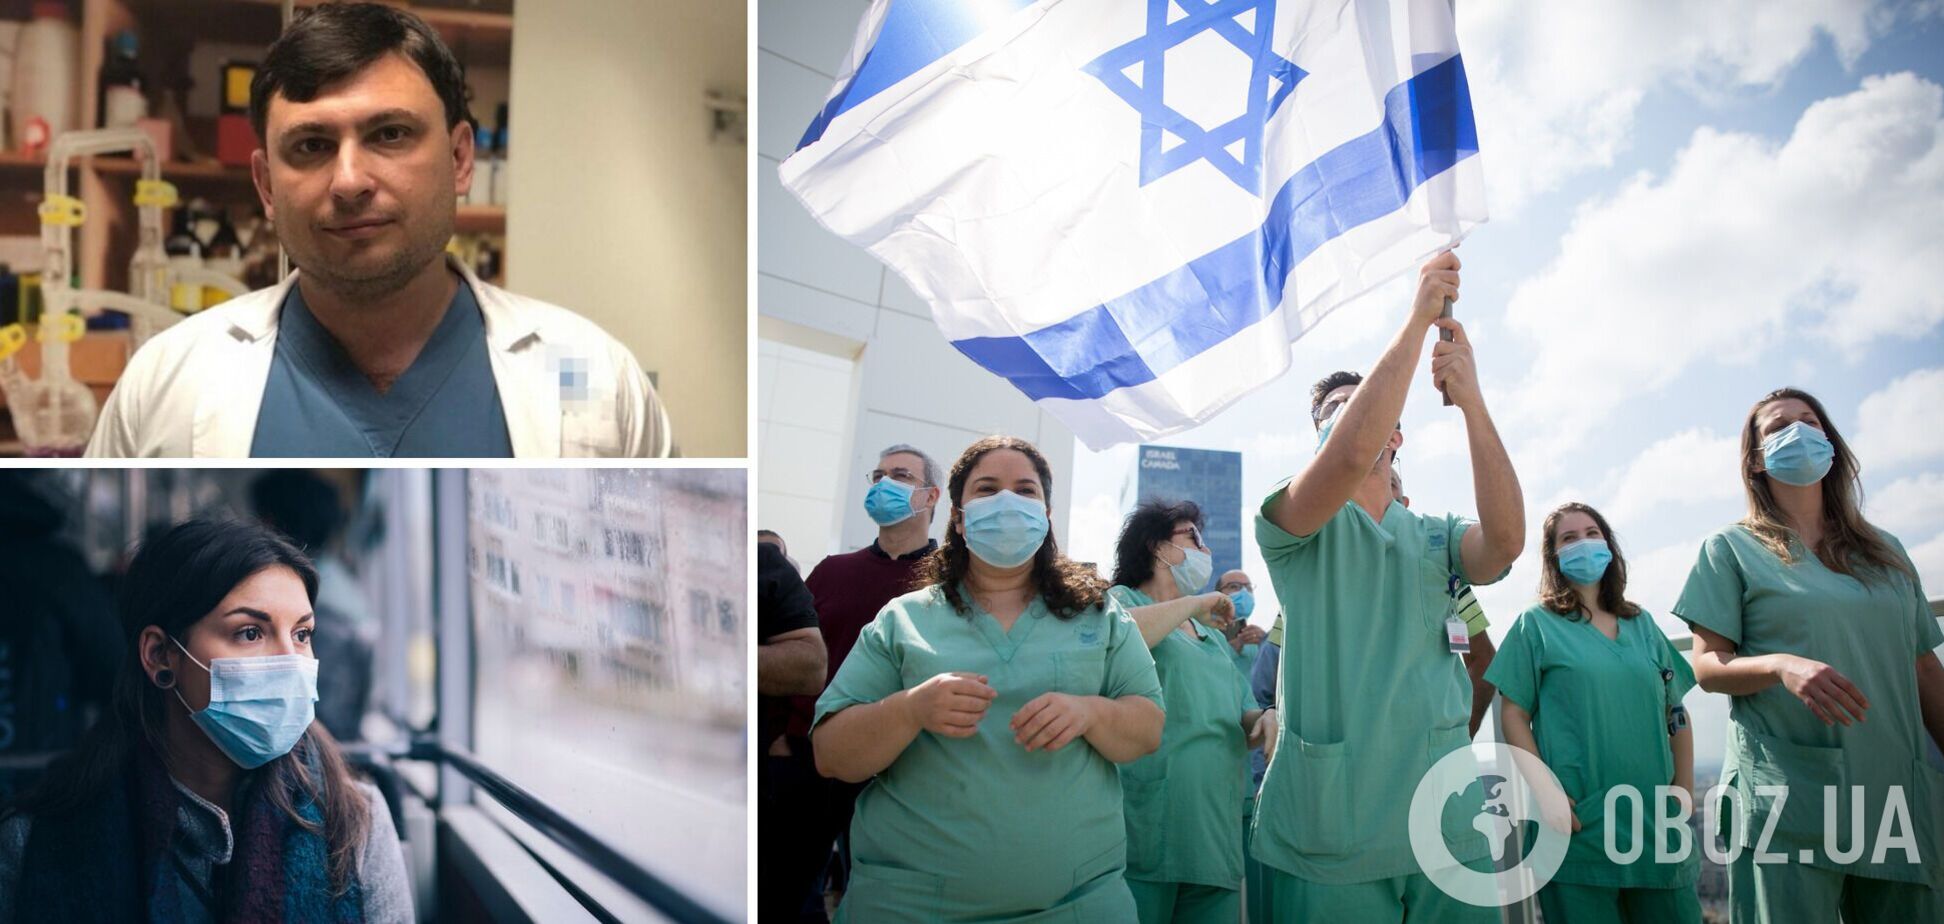 Бриль: массовая вакцинация позволила ослабить карантин в Израиле, но непривитые болеют тяжело